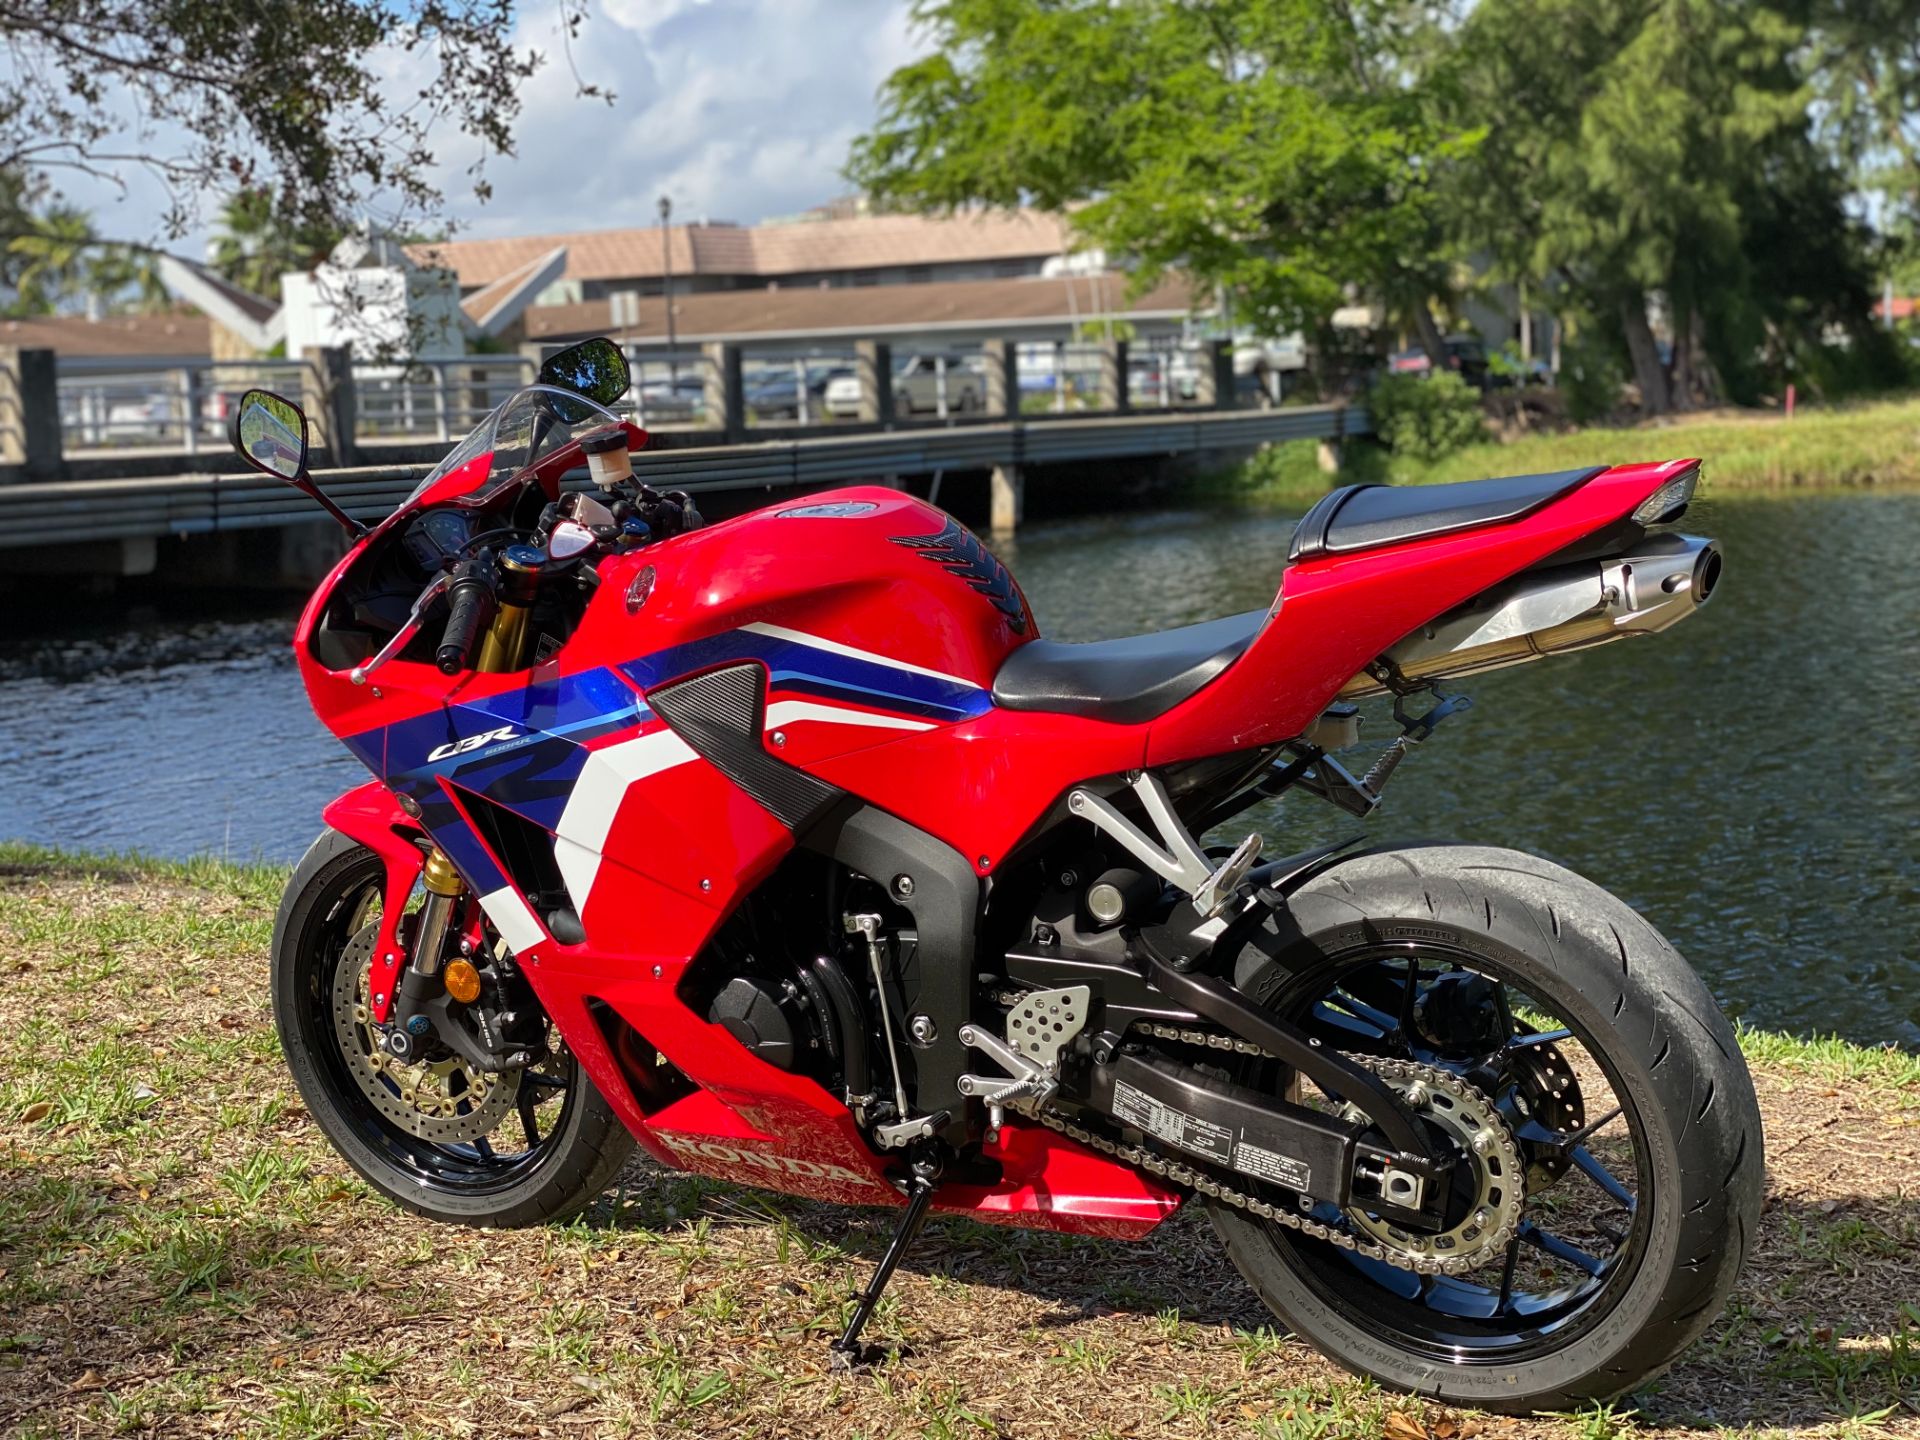 2021 Honda CBR600RR in North Miami Beach, Florida - Photo 20